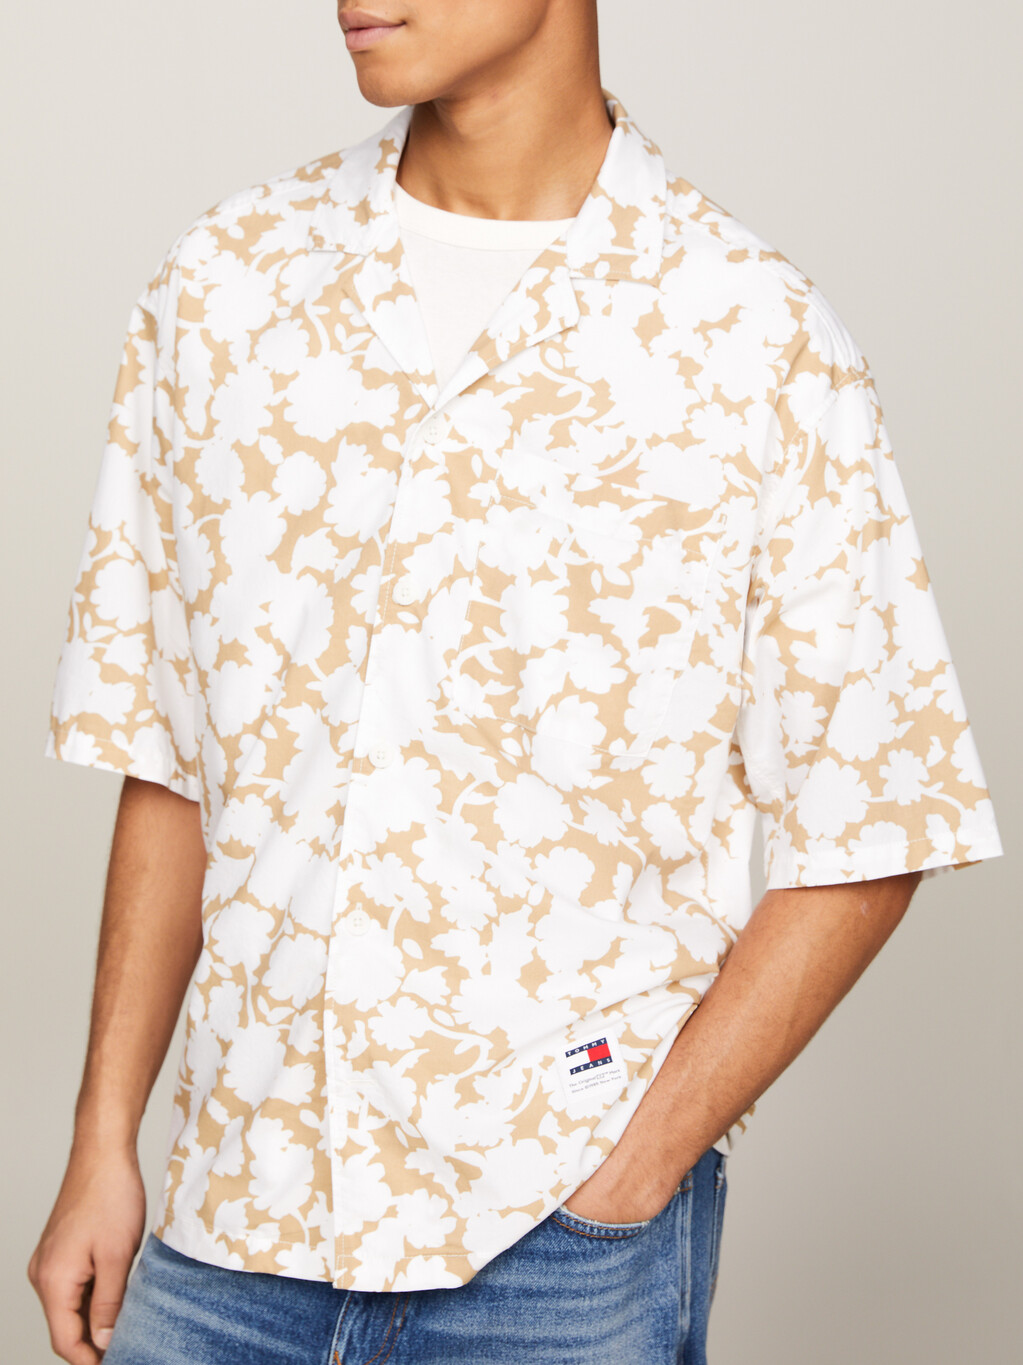 花卉印花休閒短袖襯衫, Floral Aop White, hi-res